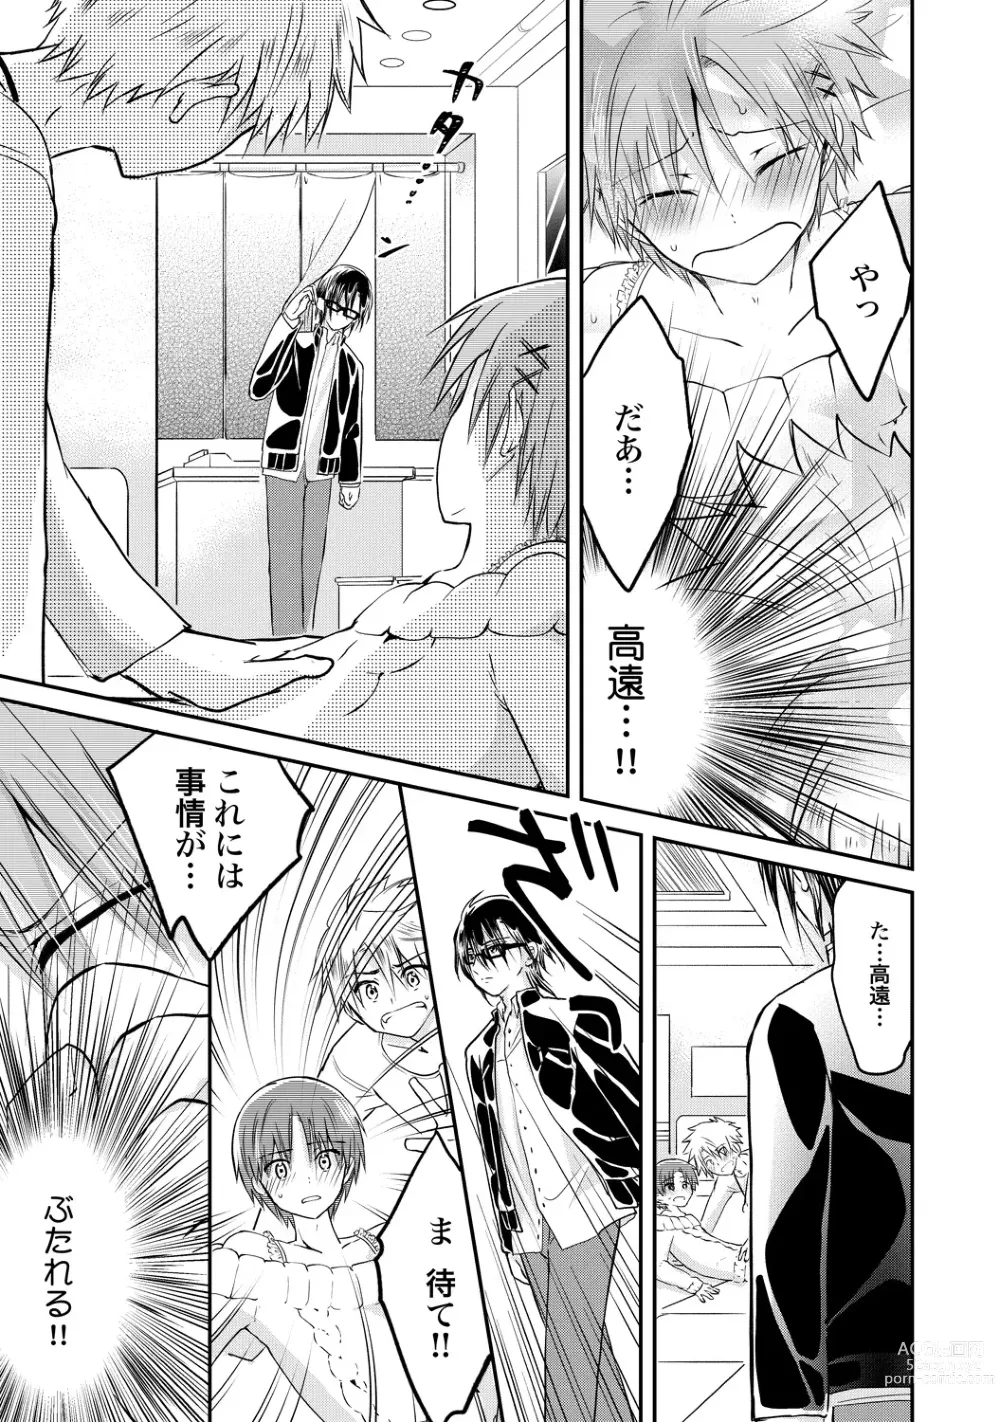 Page 190 of manga Ijou Aishuu Inbiroku [R18] [Digital]]